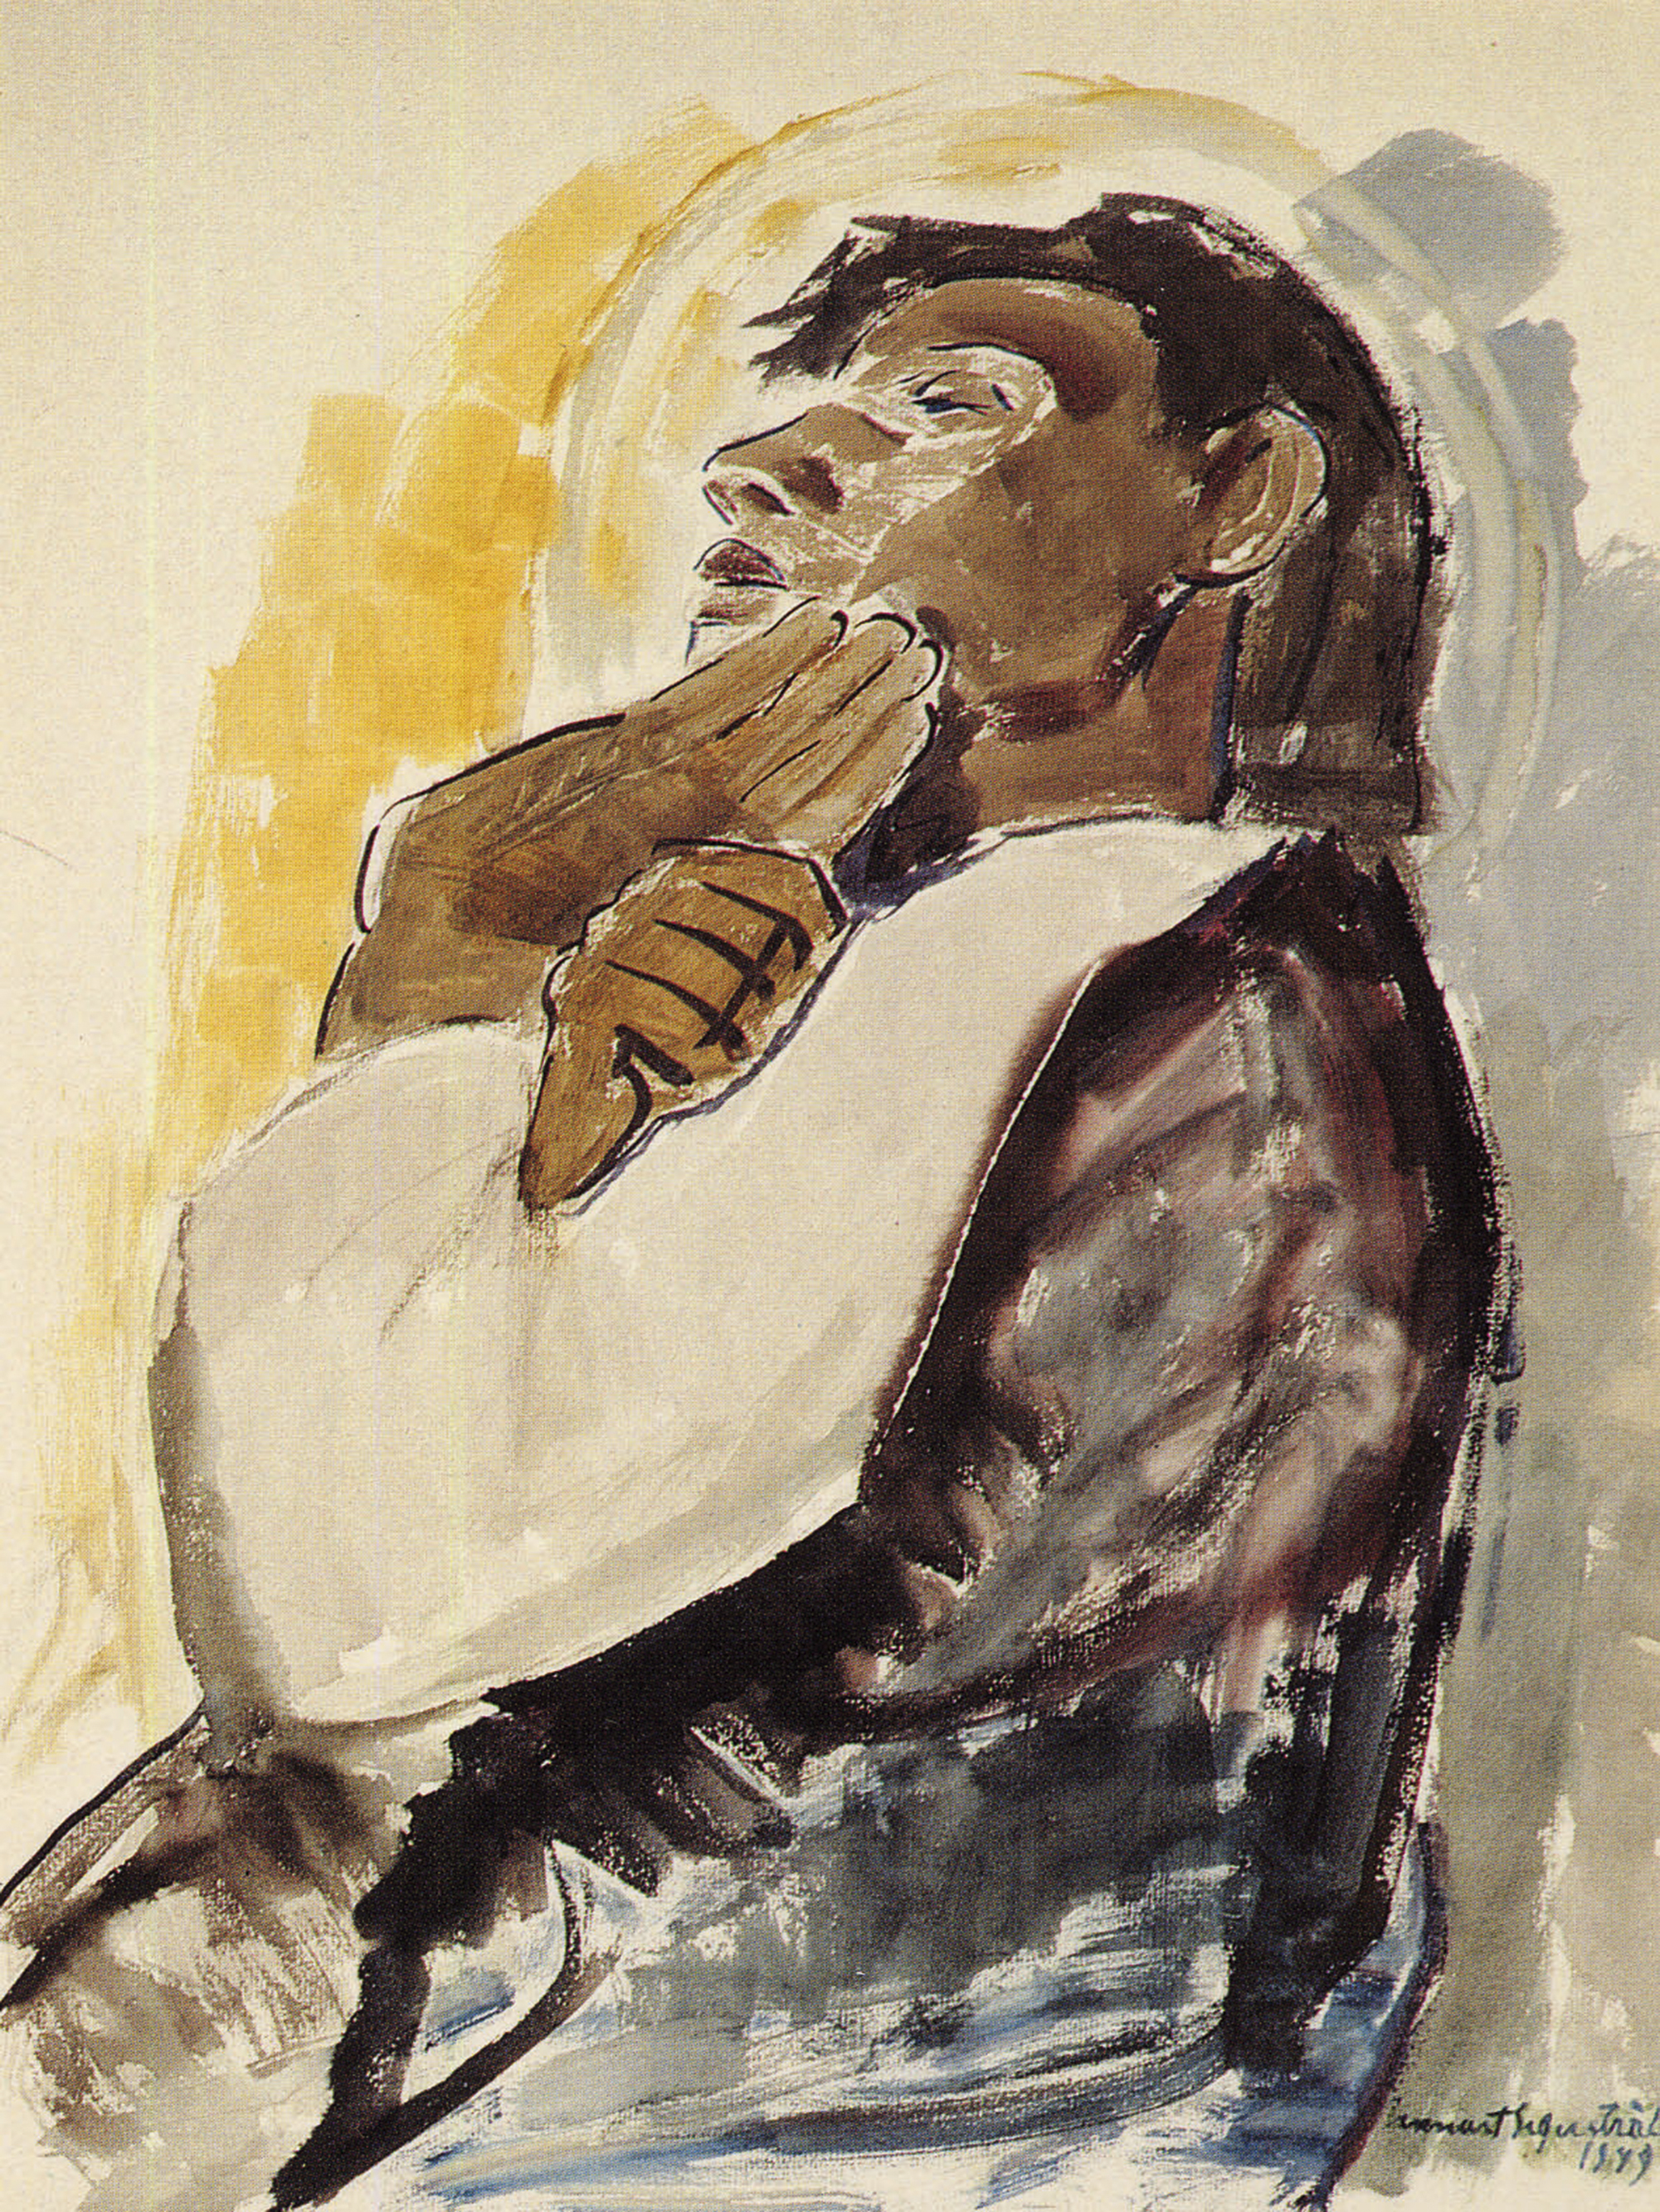 Nukkuva opetuslapsi - Sovande lärjunge
akvarelli/akvarell 63,5 x 48,5 cm, 1949